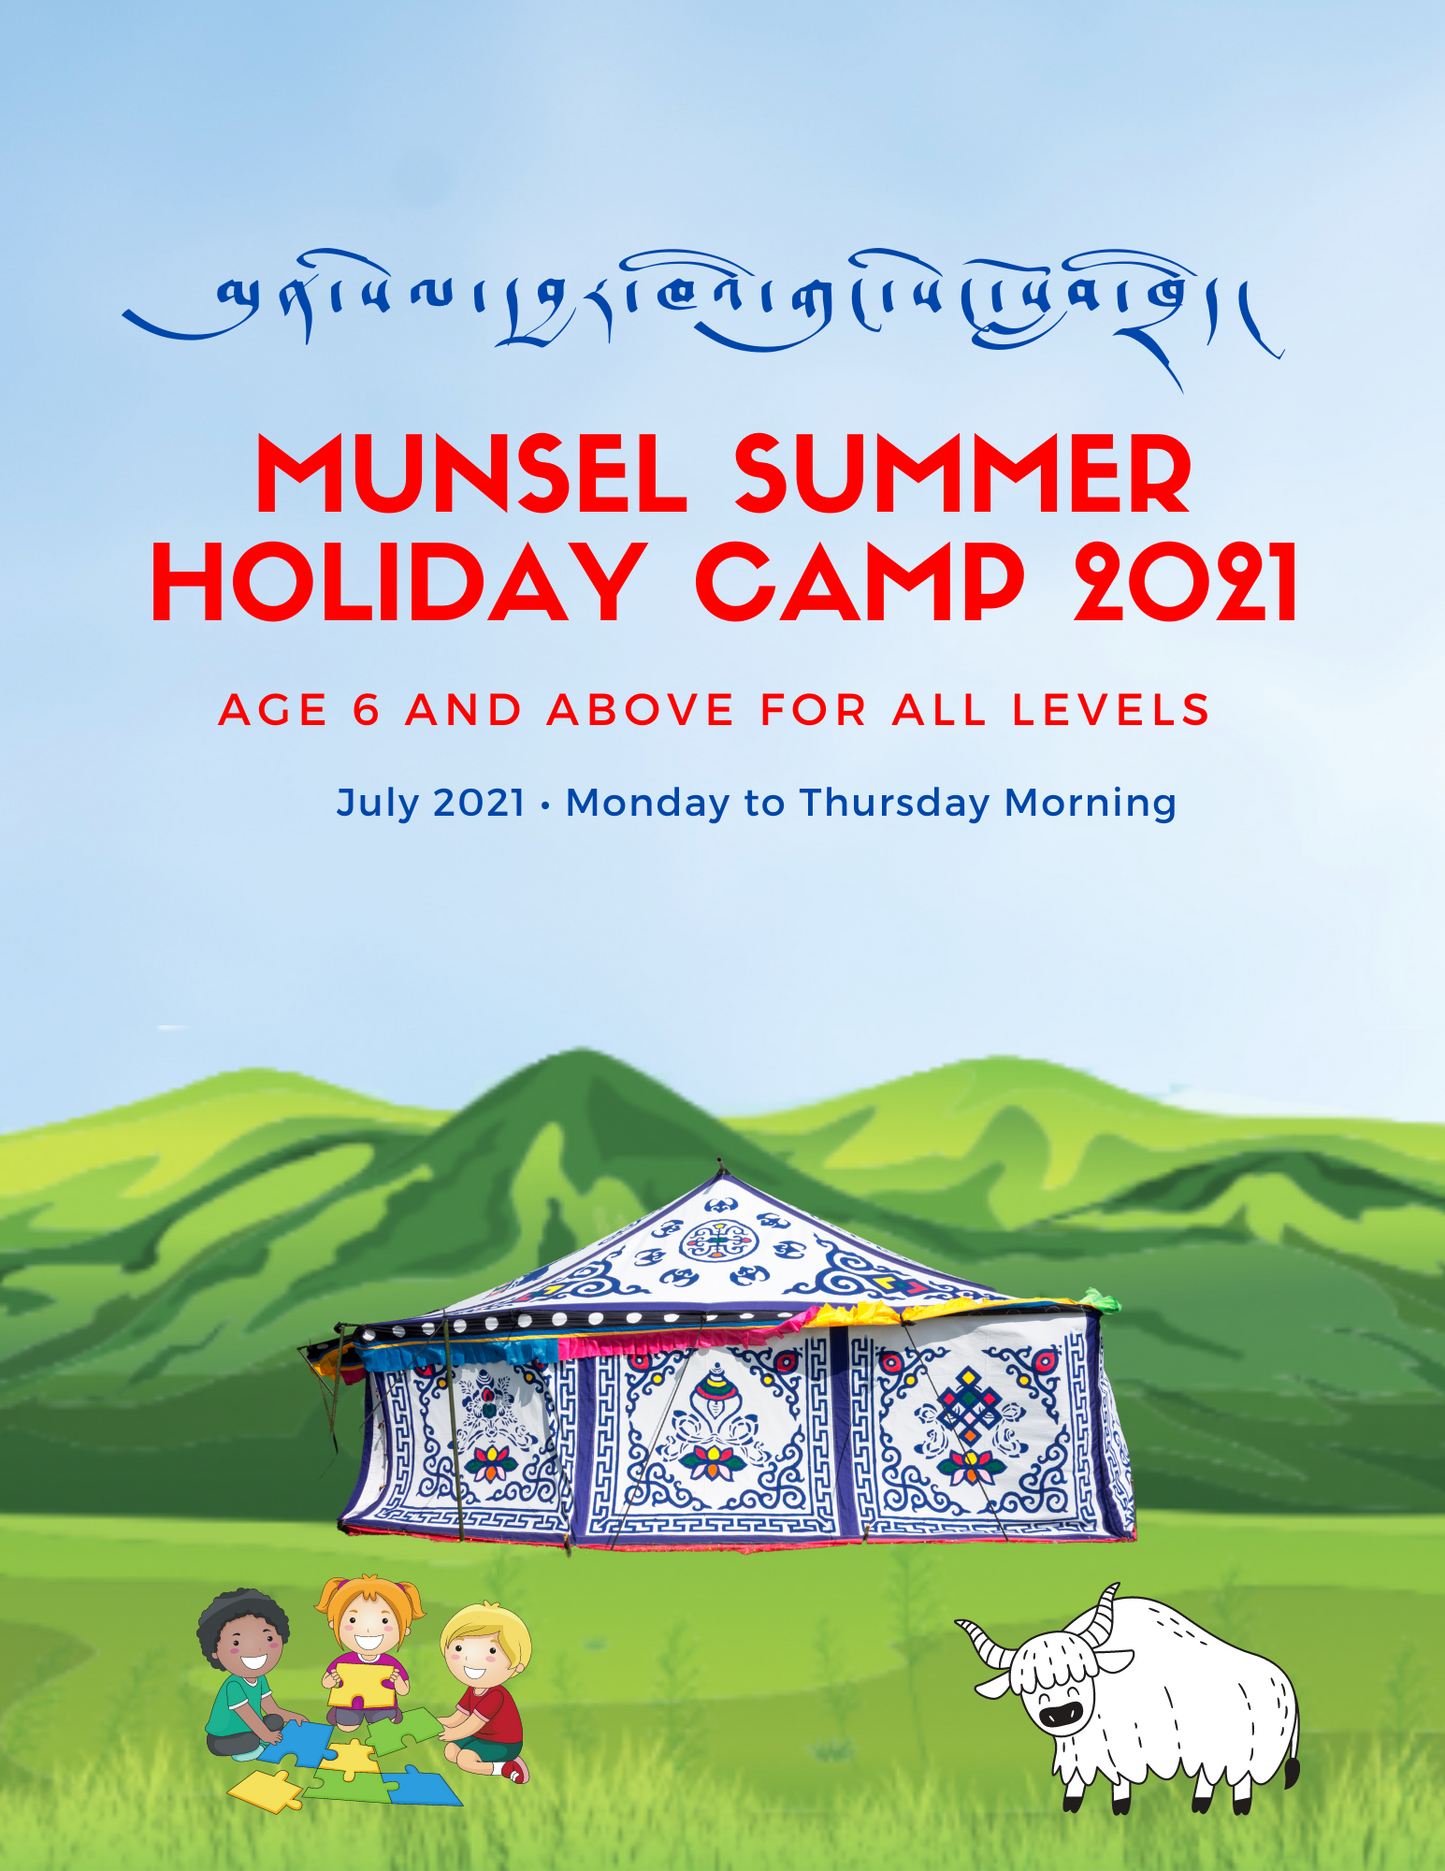 Munsel Summer Holiday Camp 2021